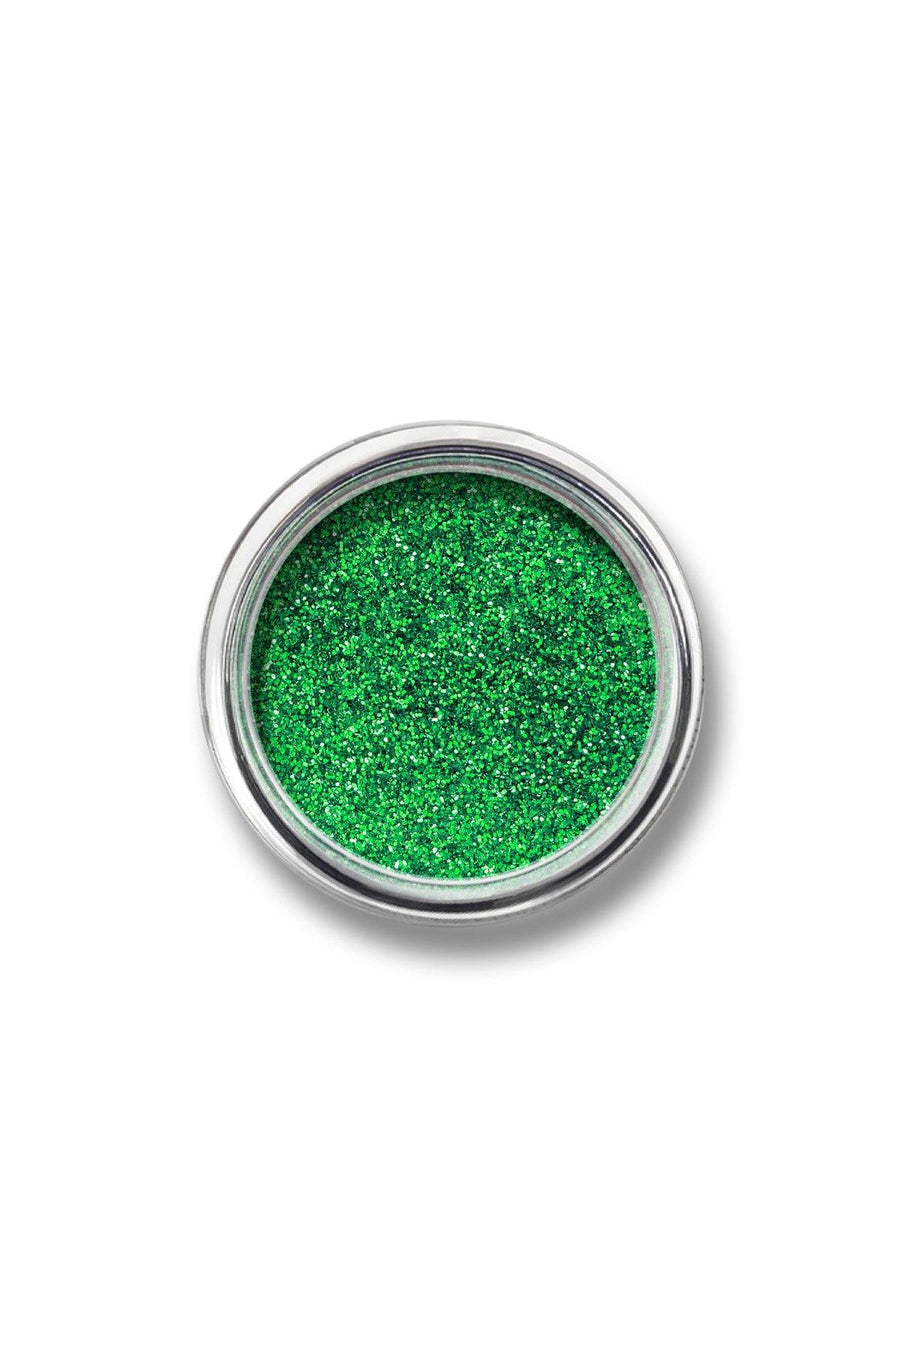 Glitter Powder #20 - Green - Blend Mineral Cosmetics